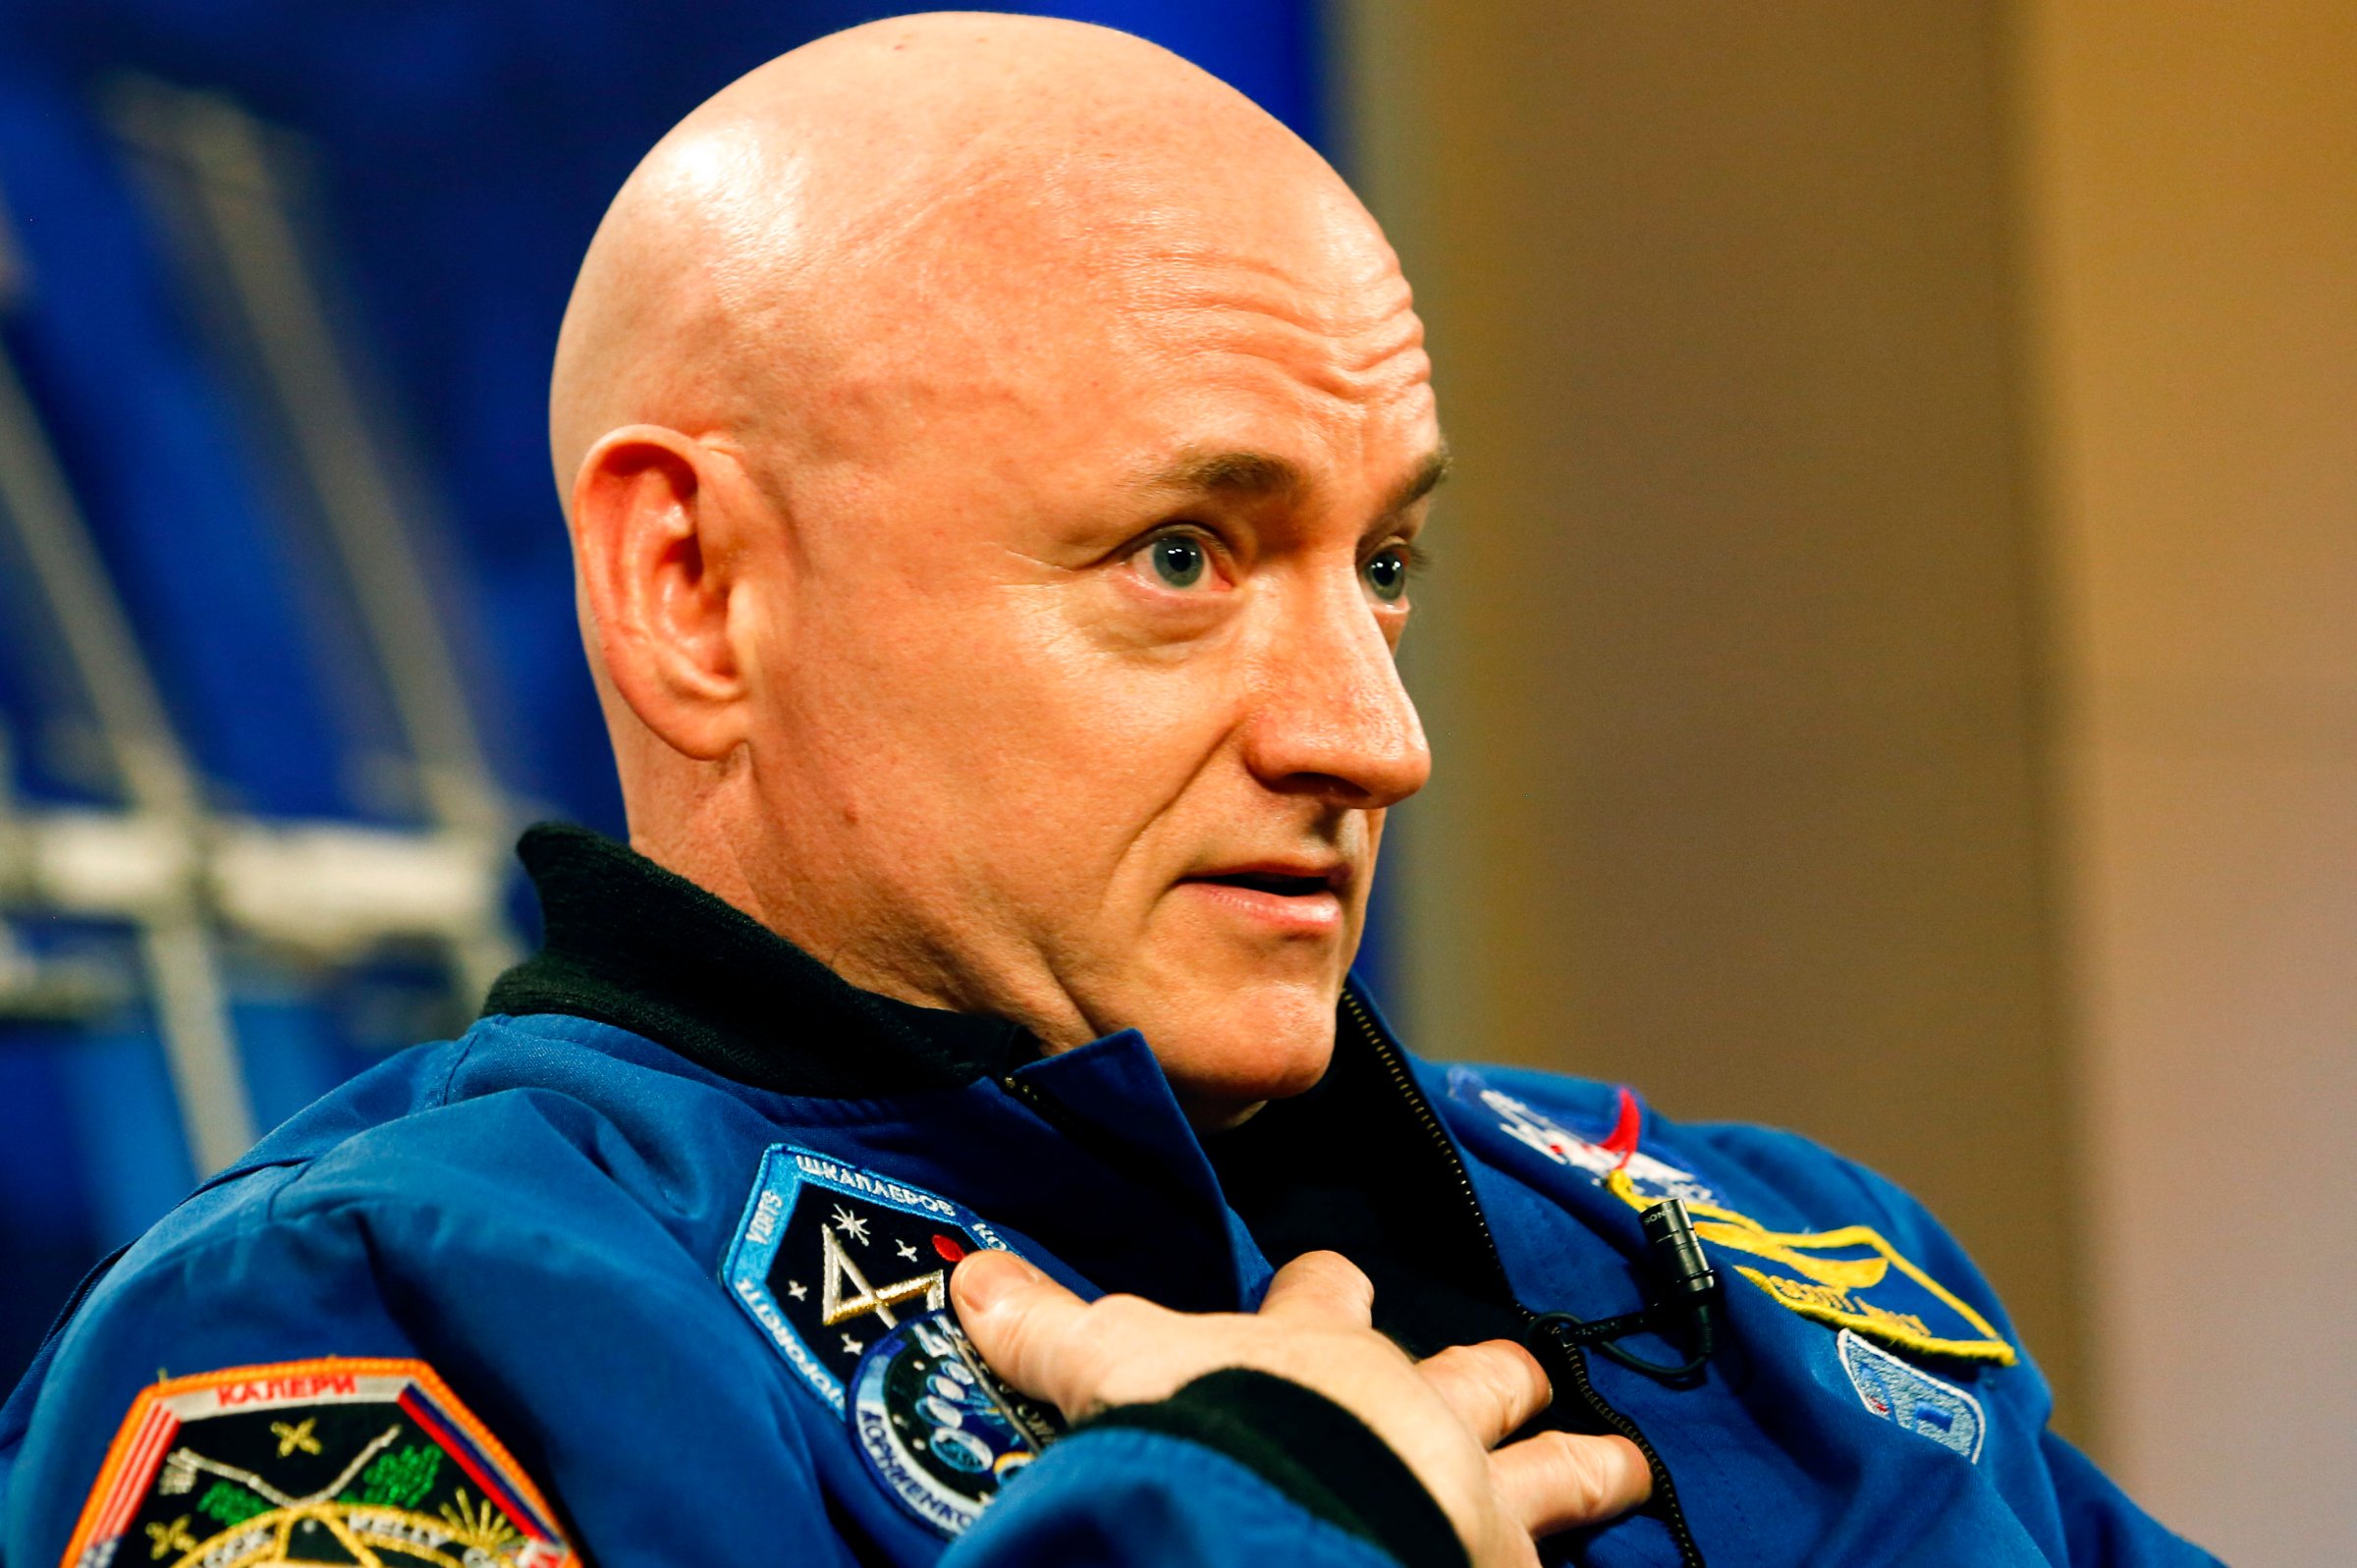 Scott Kelly retirement year in space